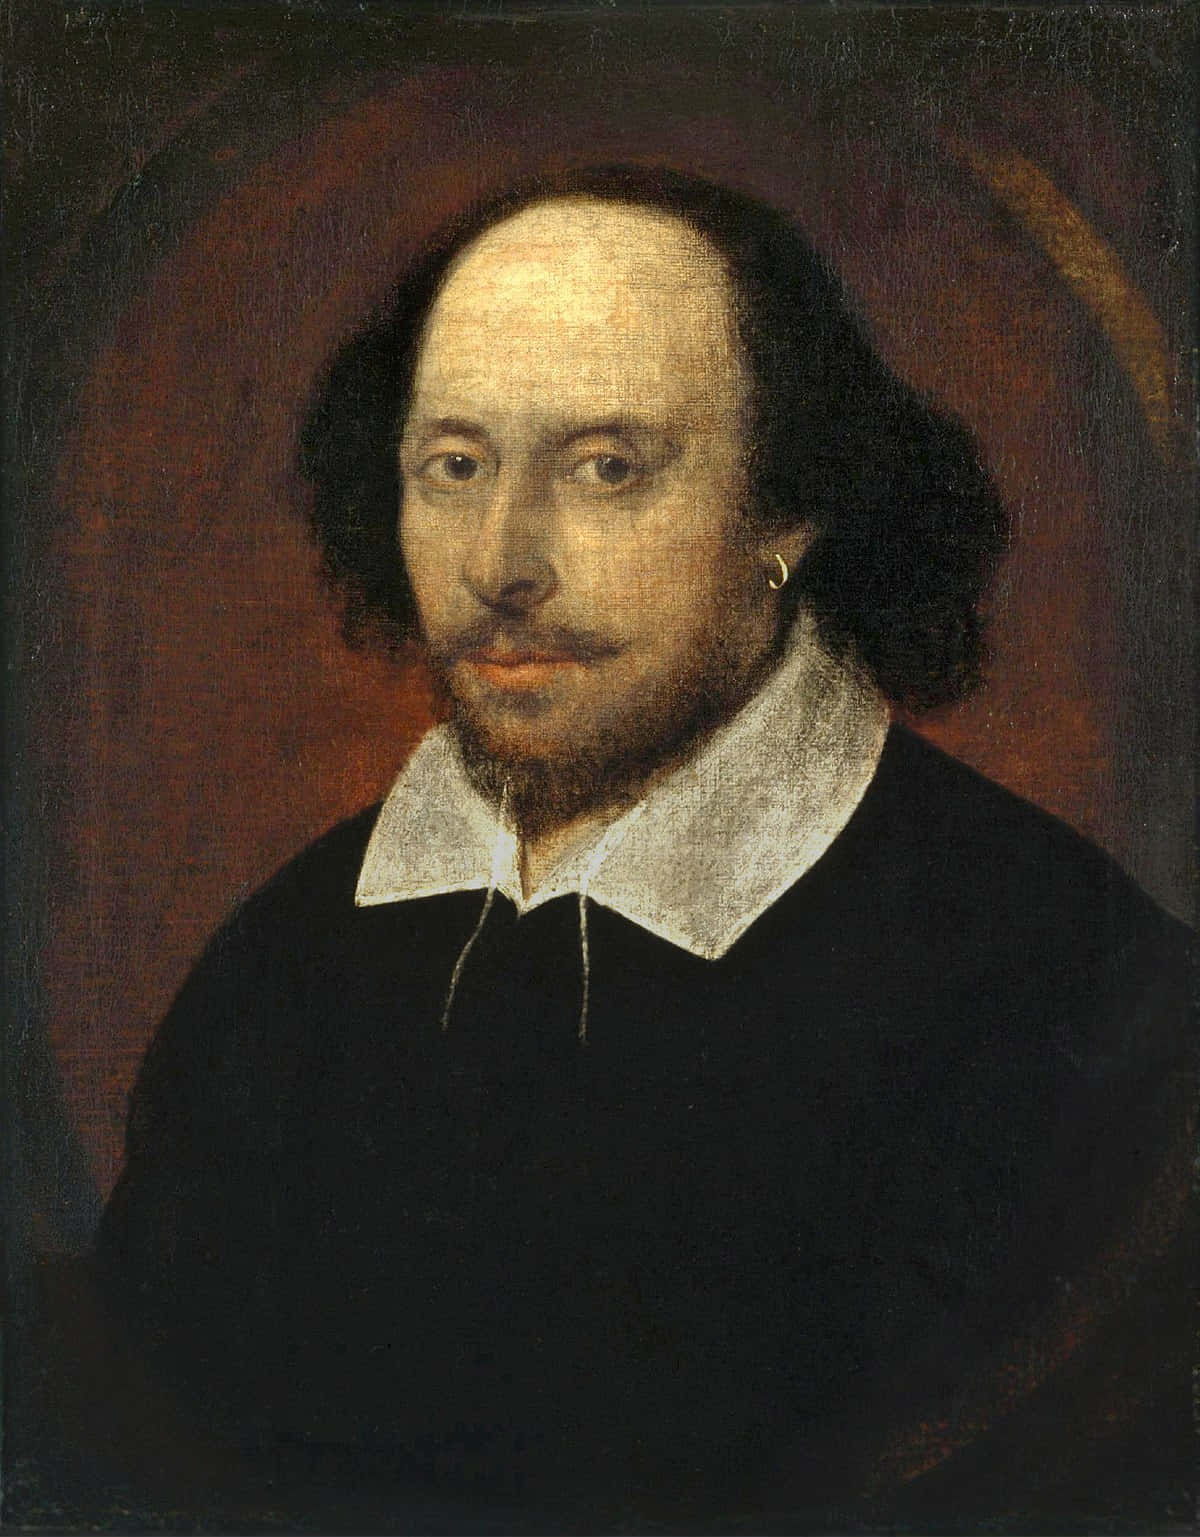 Ritrattodi William Shakespeare.